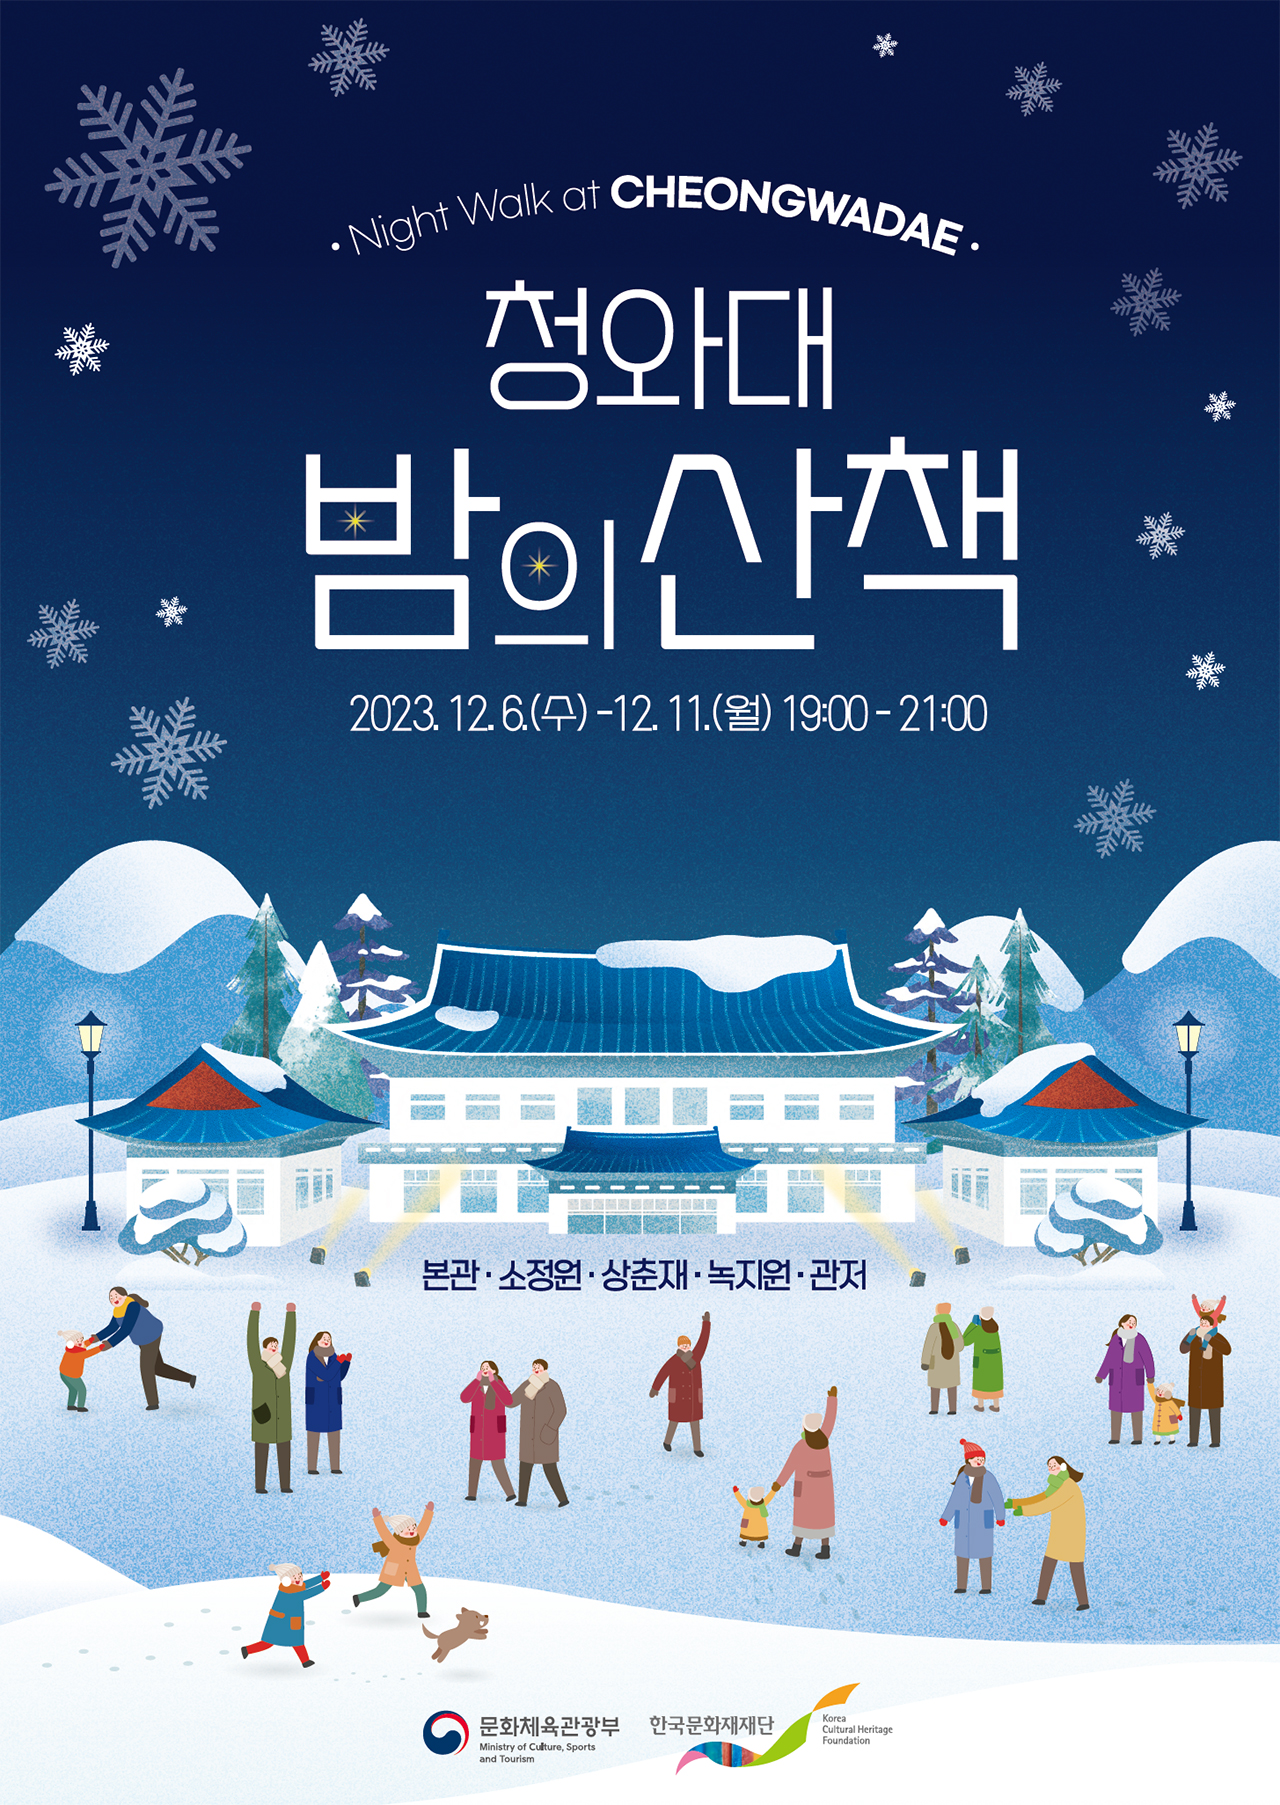 December 2023: A night walk at Cheong Wa Dae